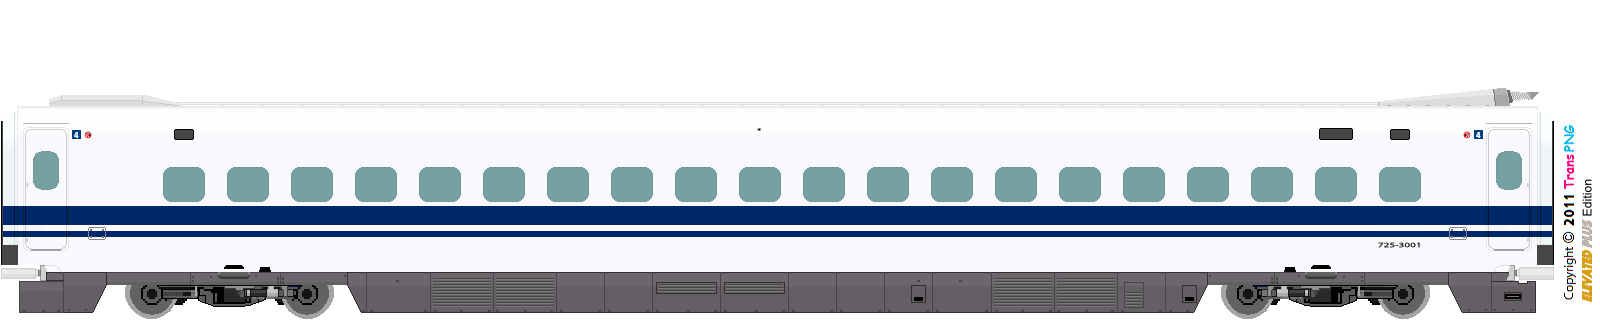 [9012] 西日本旅客鉄道 52287585753_fc48e4316a_o